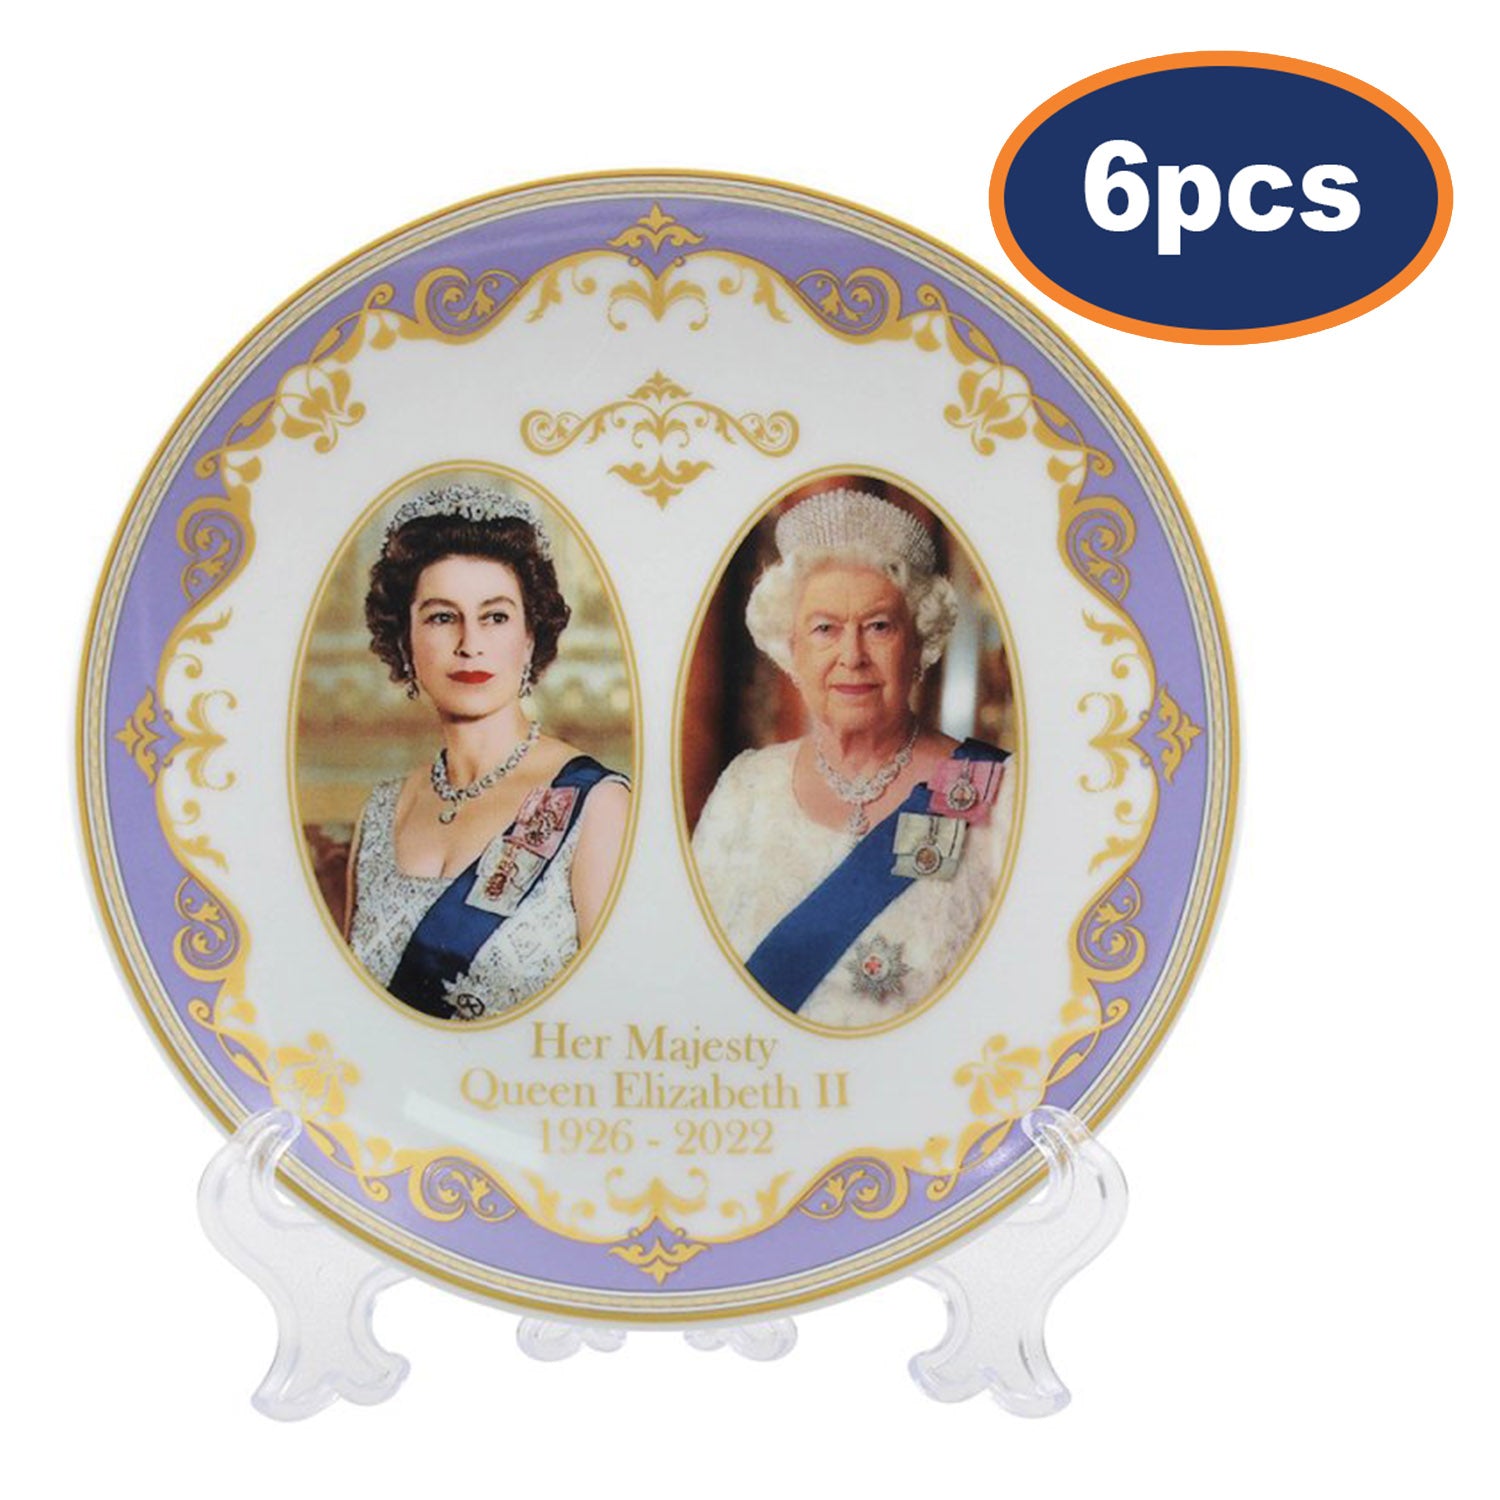 6pcs Queen Elizabeth II 15cm Fine China Decorative Plate